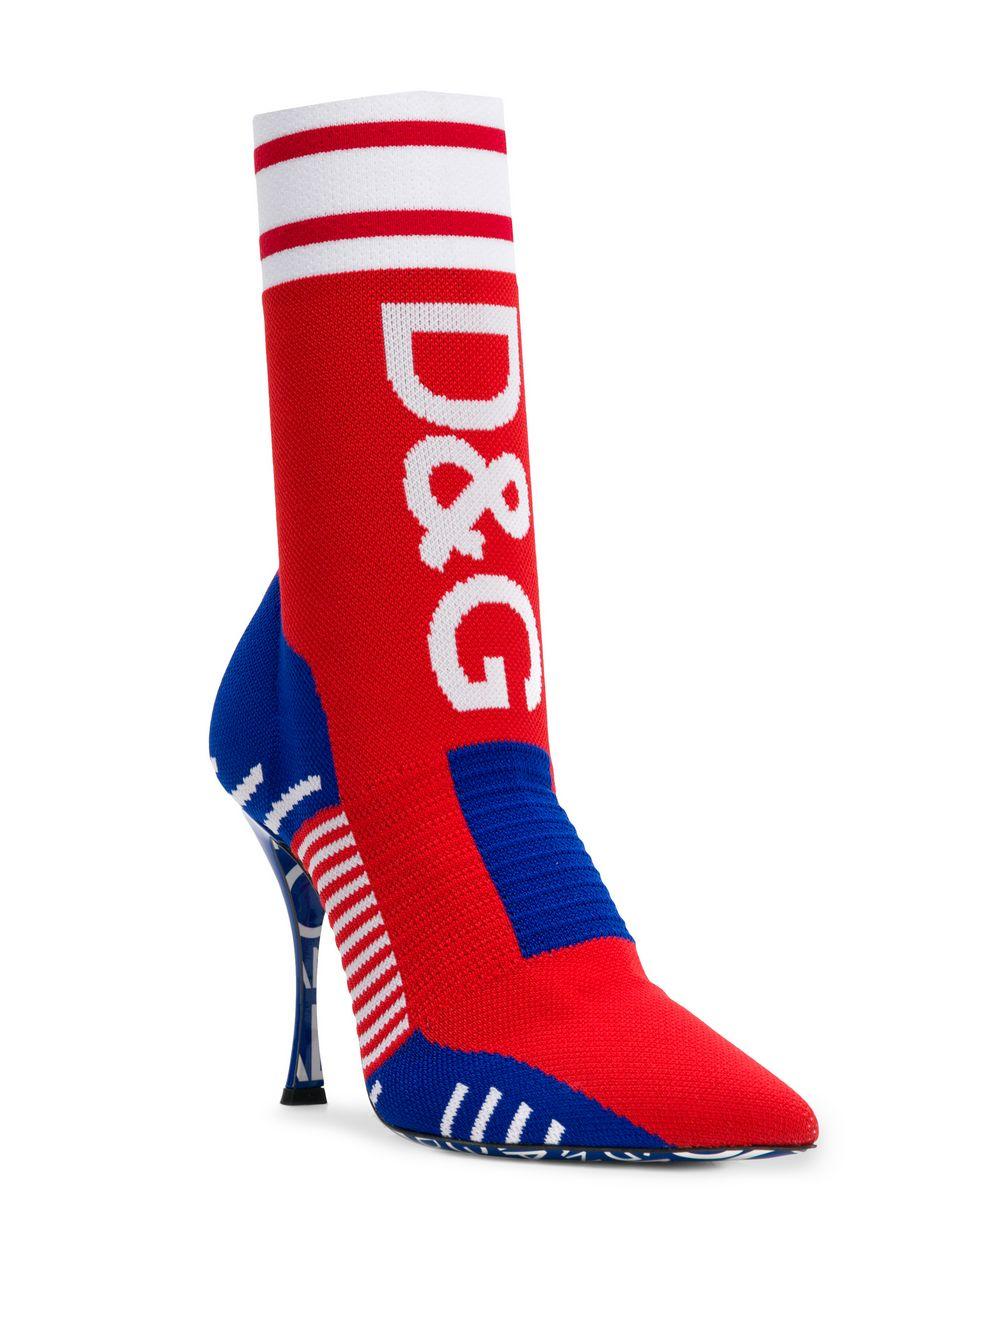 d&g sock boots